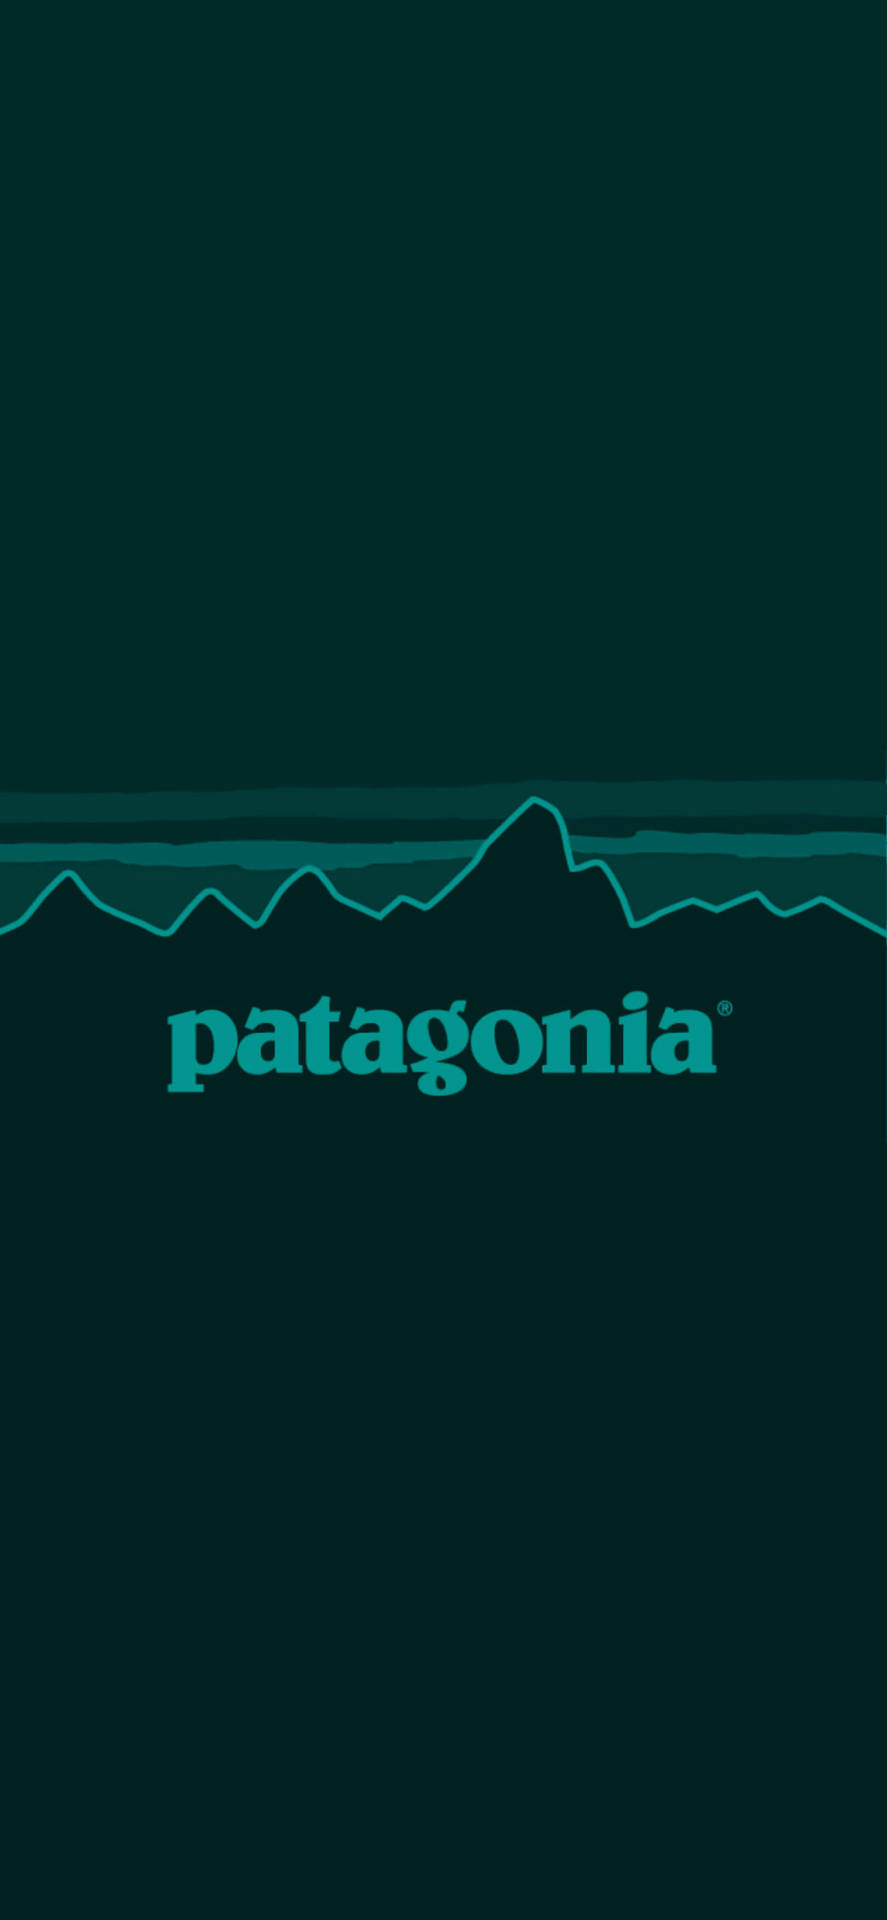 Patagonia Green Logo Wallpaper